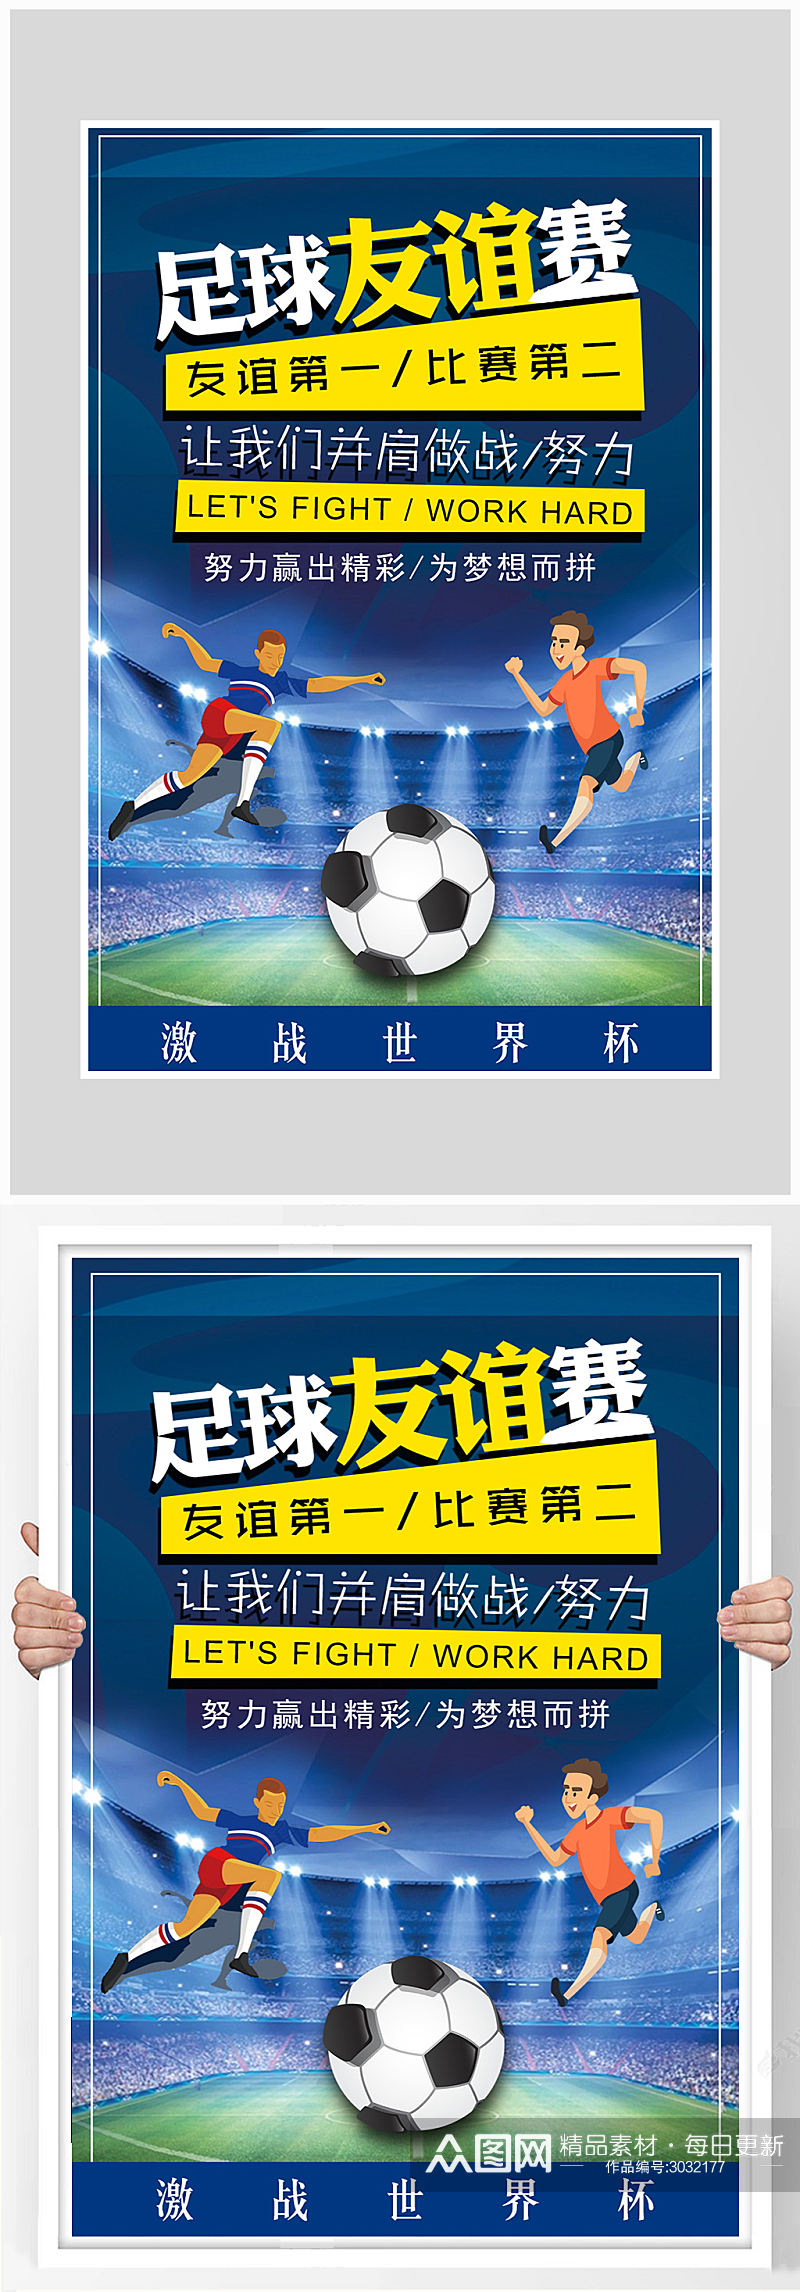 创意足球友谊比赛海报设计素材